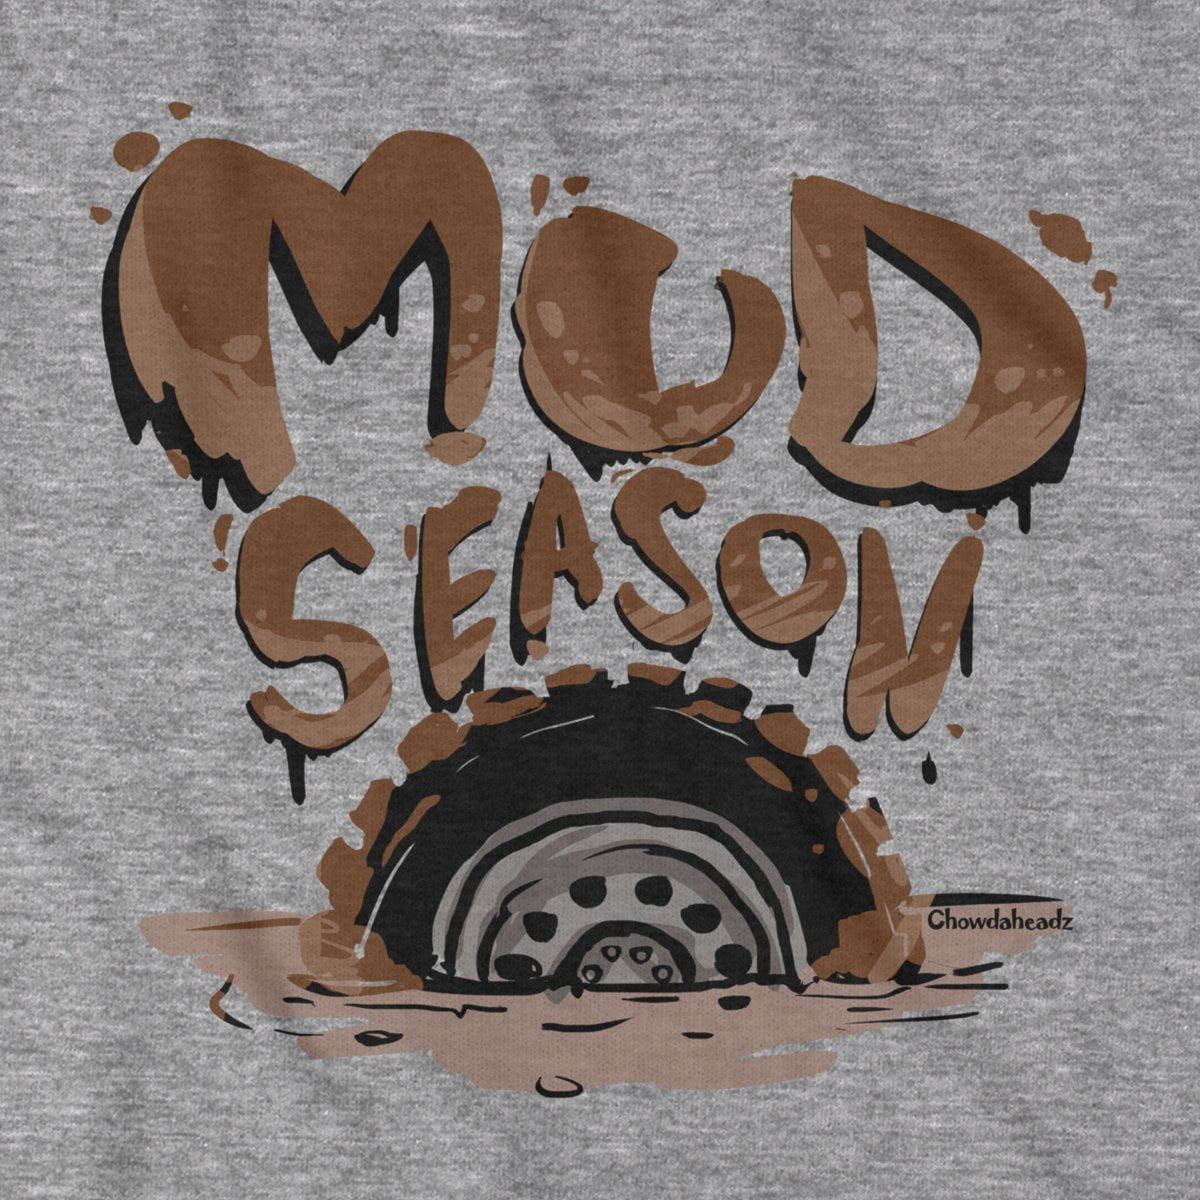 Mud Season T-Shirt - Chowdaheadz